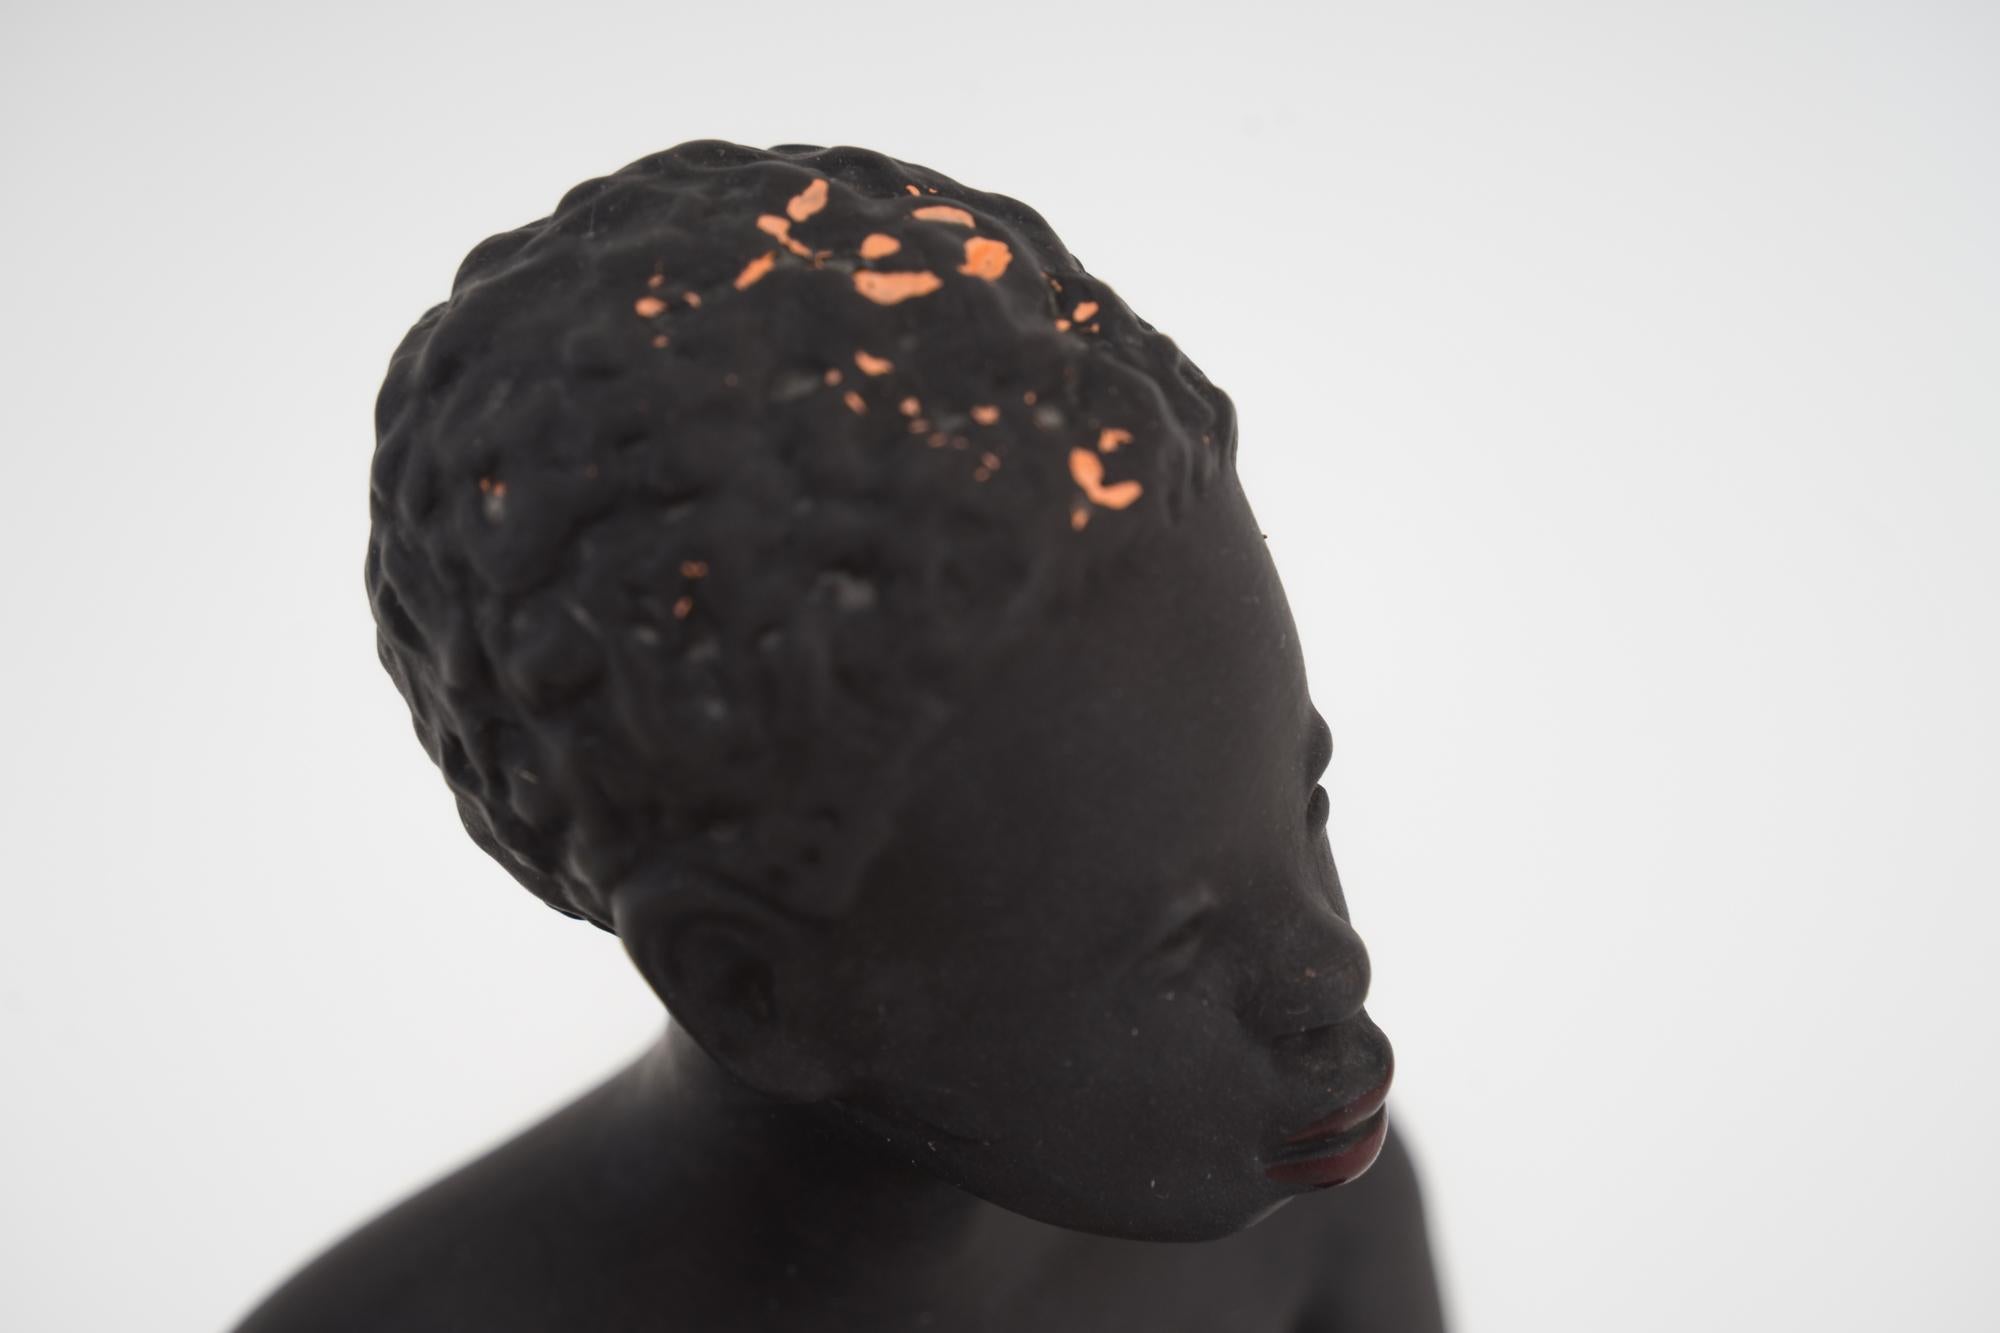 Escultura de mujer exótica africana de Leopold Anzengruber, Viena Años 50
Lamentablemente hay desgaste de color en la cabeza ( por favor, echa un vistazo a las fotos adjuntas )
Estado original